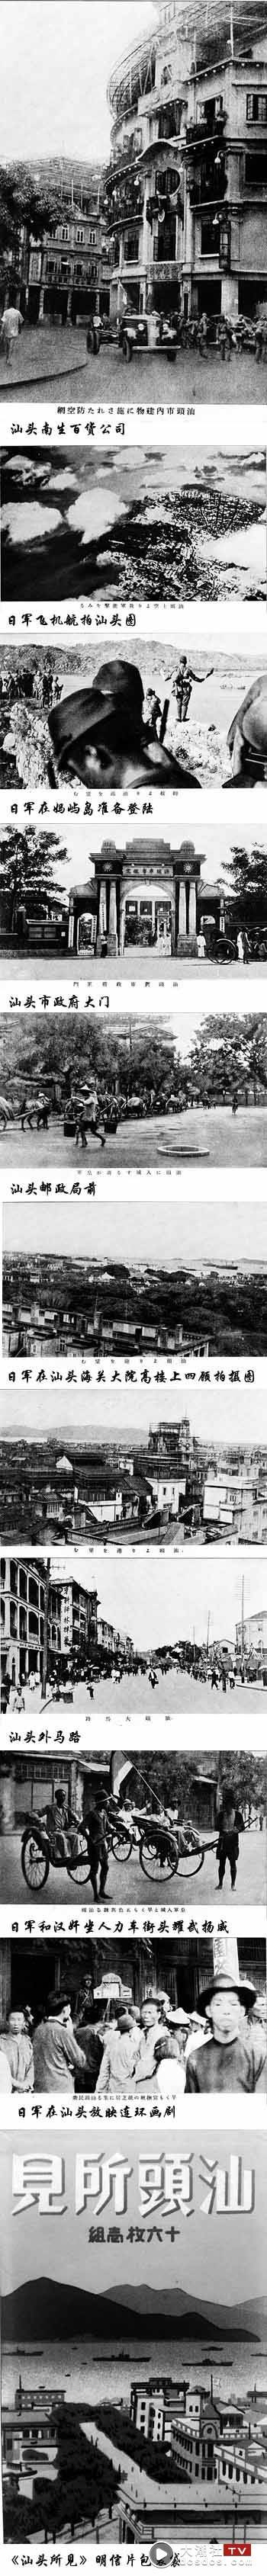 日本名所图绘社印行《汕头所见》明信片：日军侵略汕头的铁证 最新 图1张